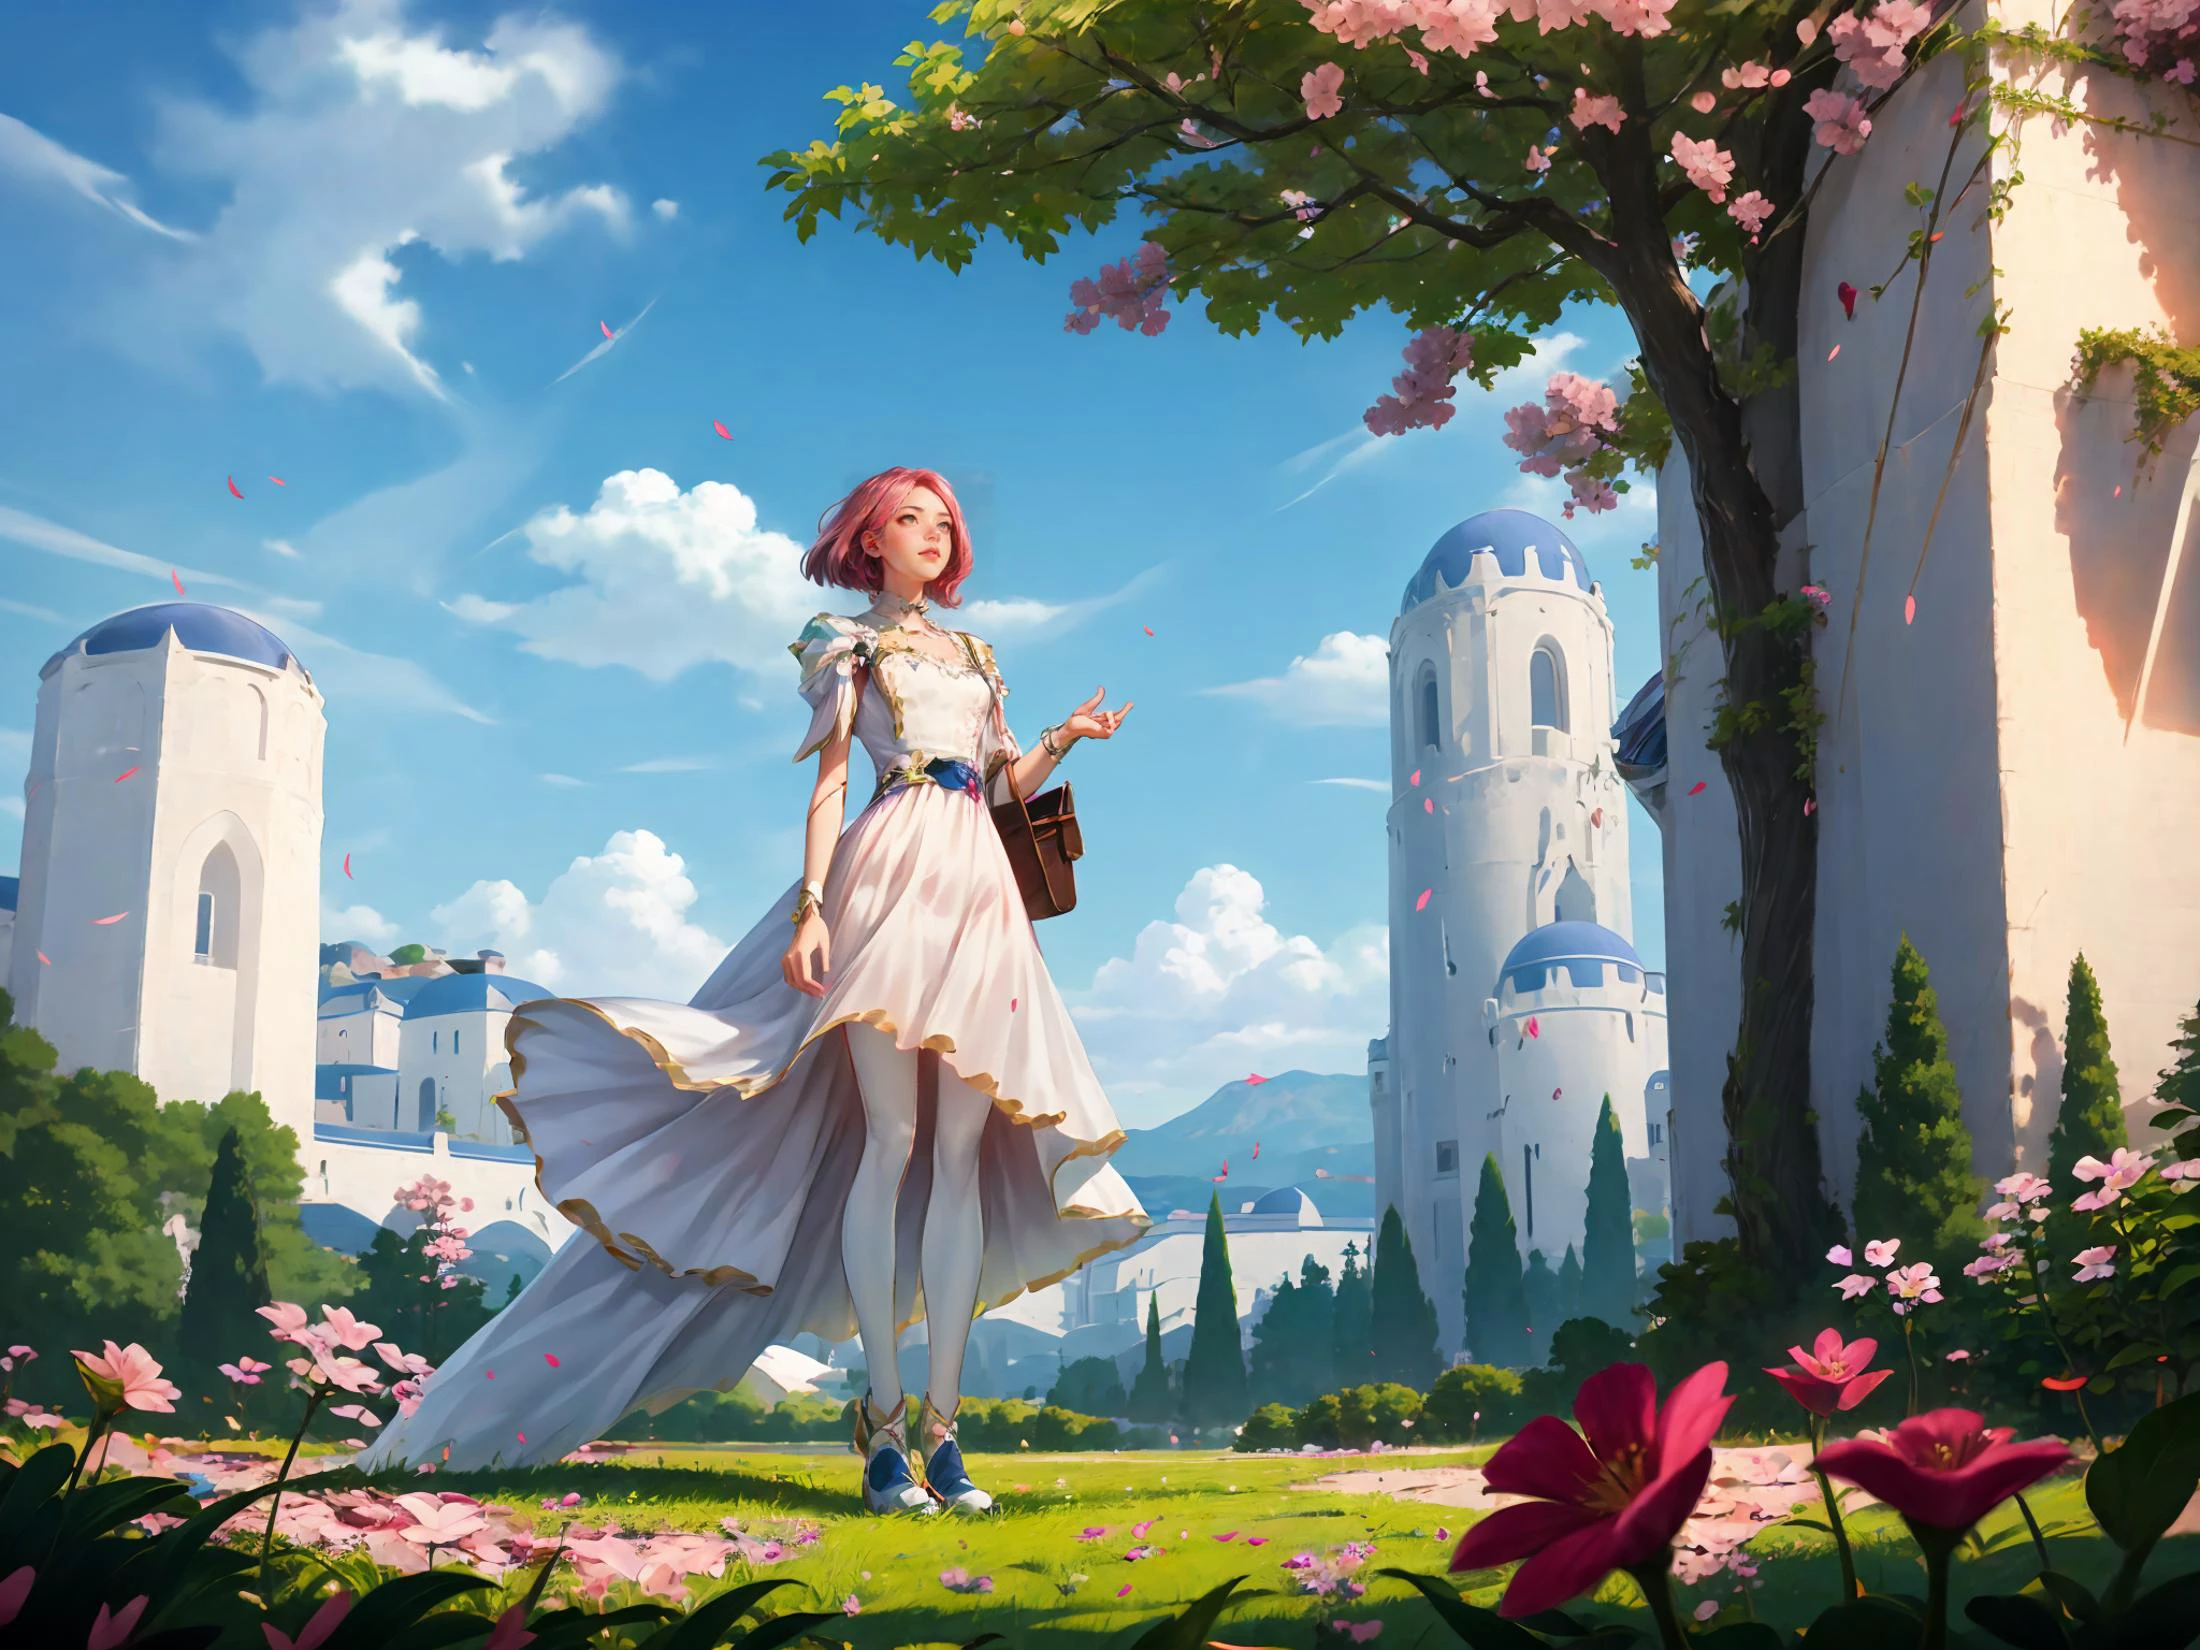 HEZI,LOL,lol-Stil,Spiel-CG,eine Frau in einem weißen Kleid steht vor einem Baum mit rosa Blüten und einem blauen Himmel,Chizuko Yoshida,Rossdraws globale Beleuchtung,ein detailreiches Gemälde,